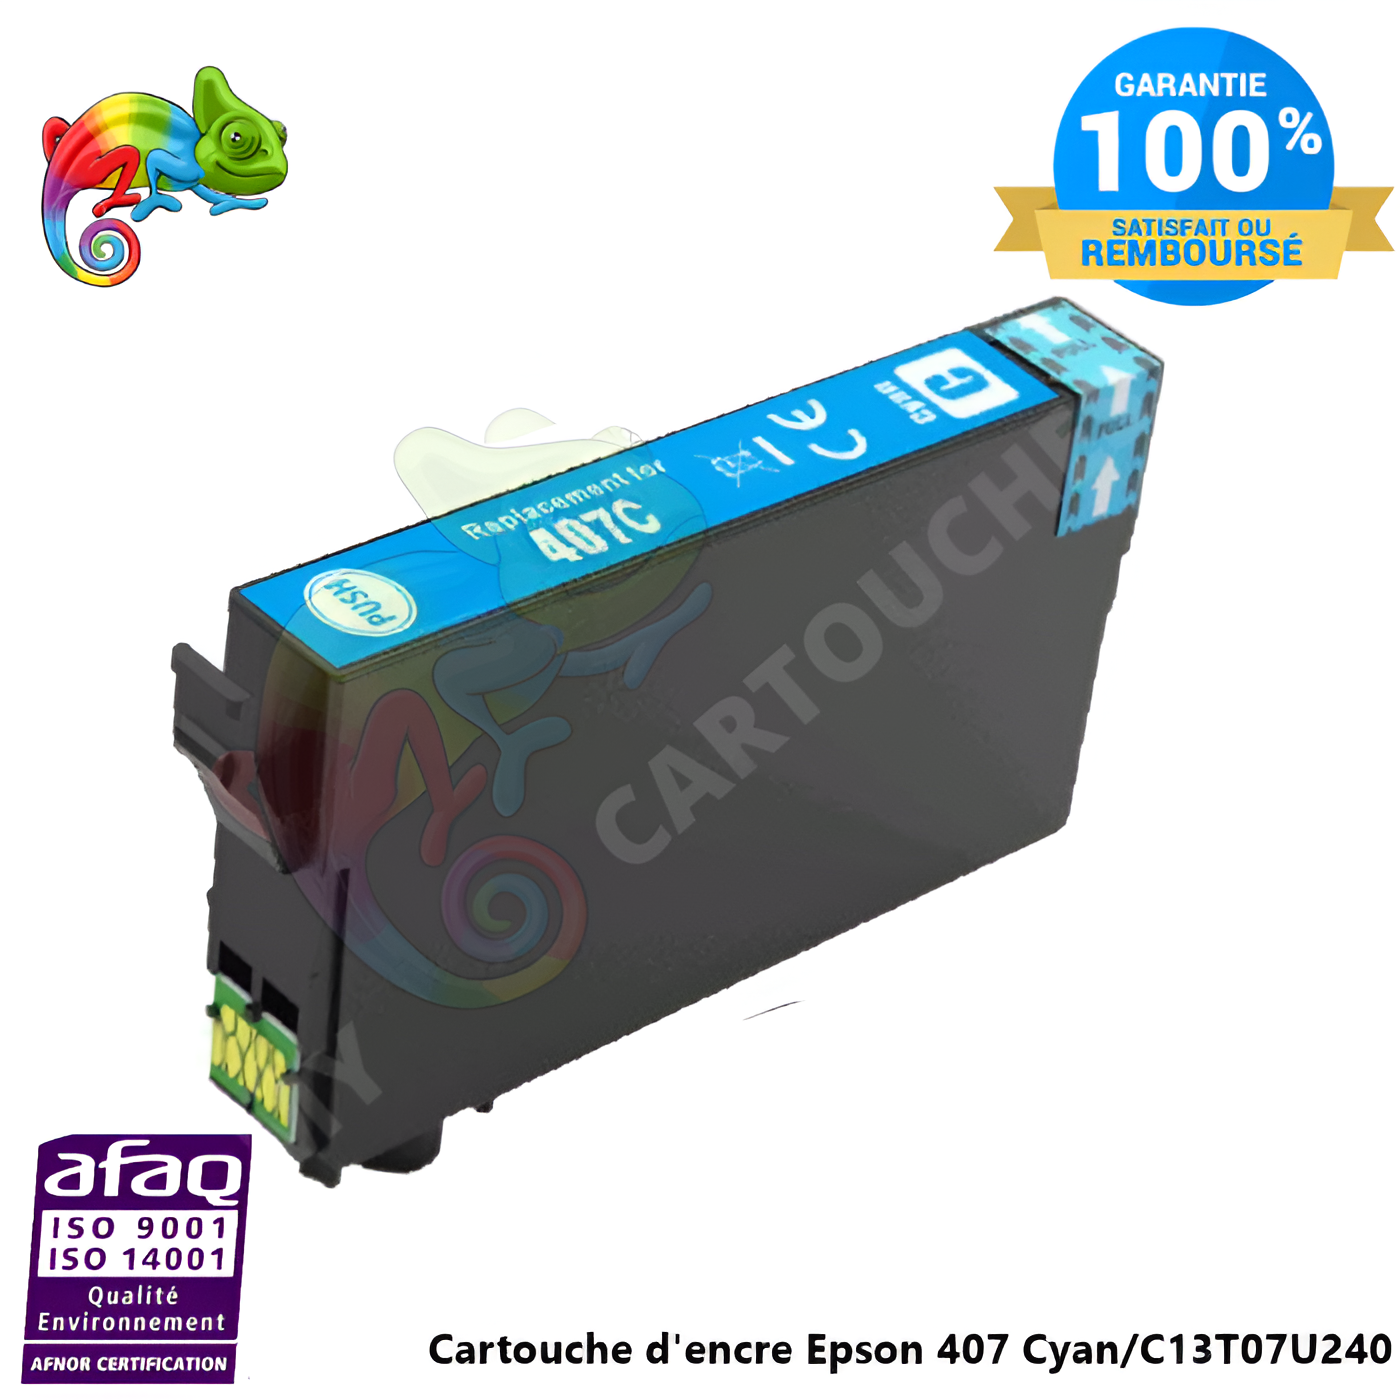 Cartouche D'encre Epson ( Clavier ) 407 Cyan Epson C13T07U240 Compatible